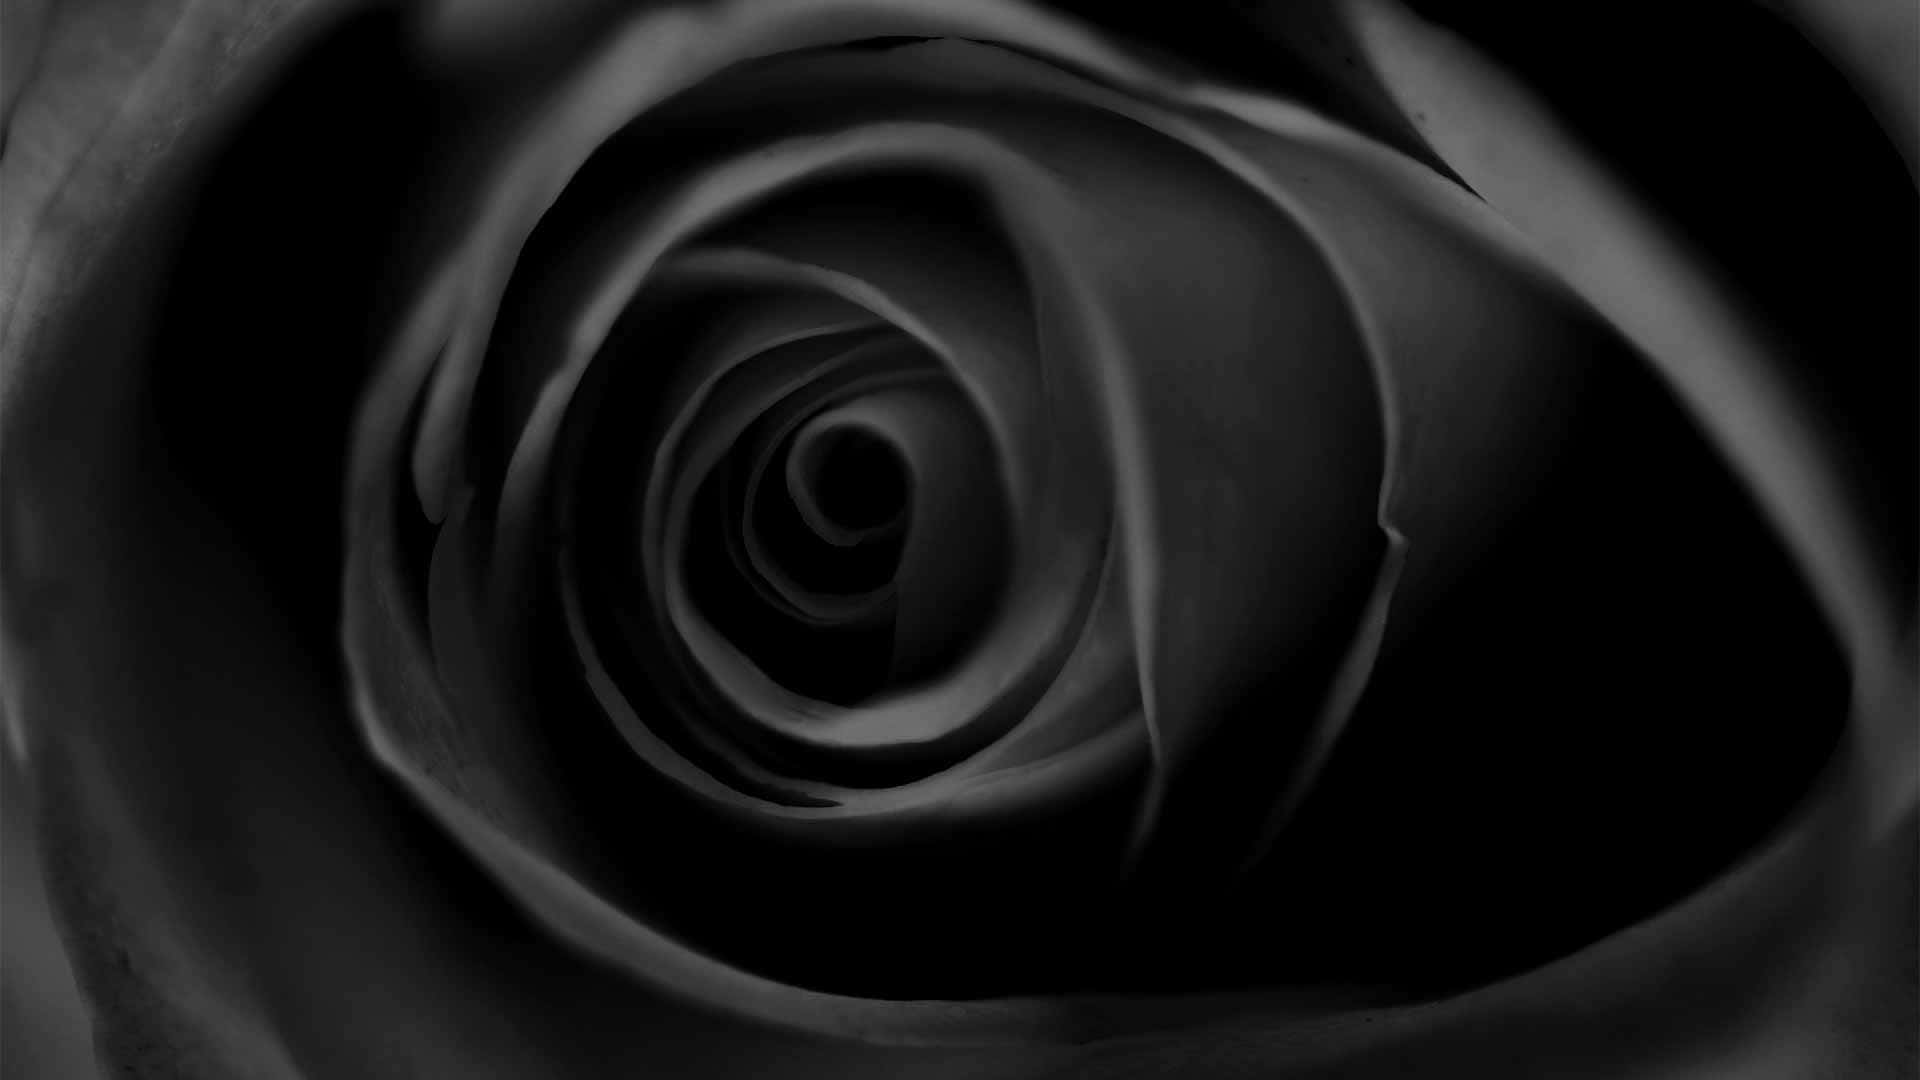 A Beautiful Black Rose in Nature